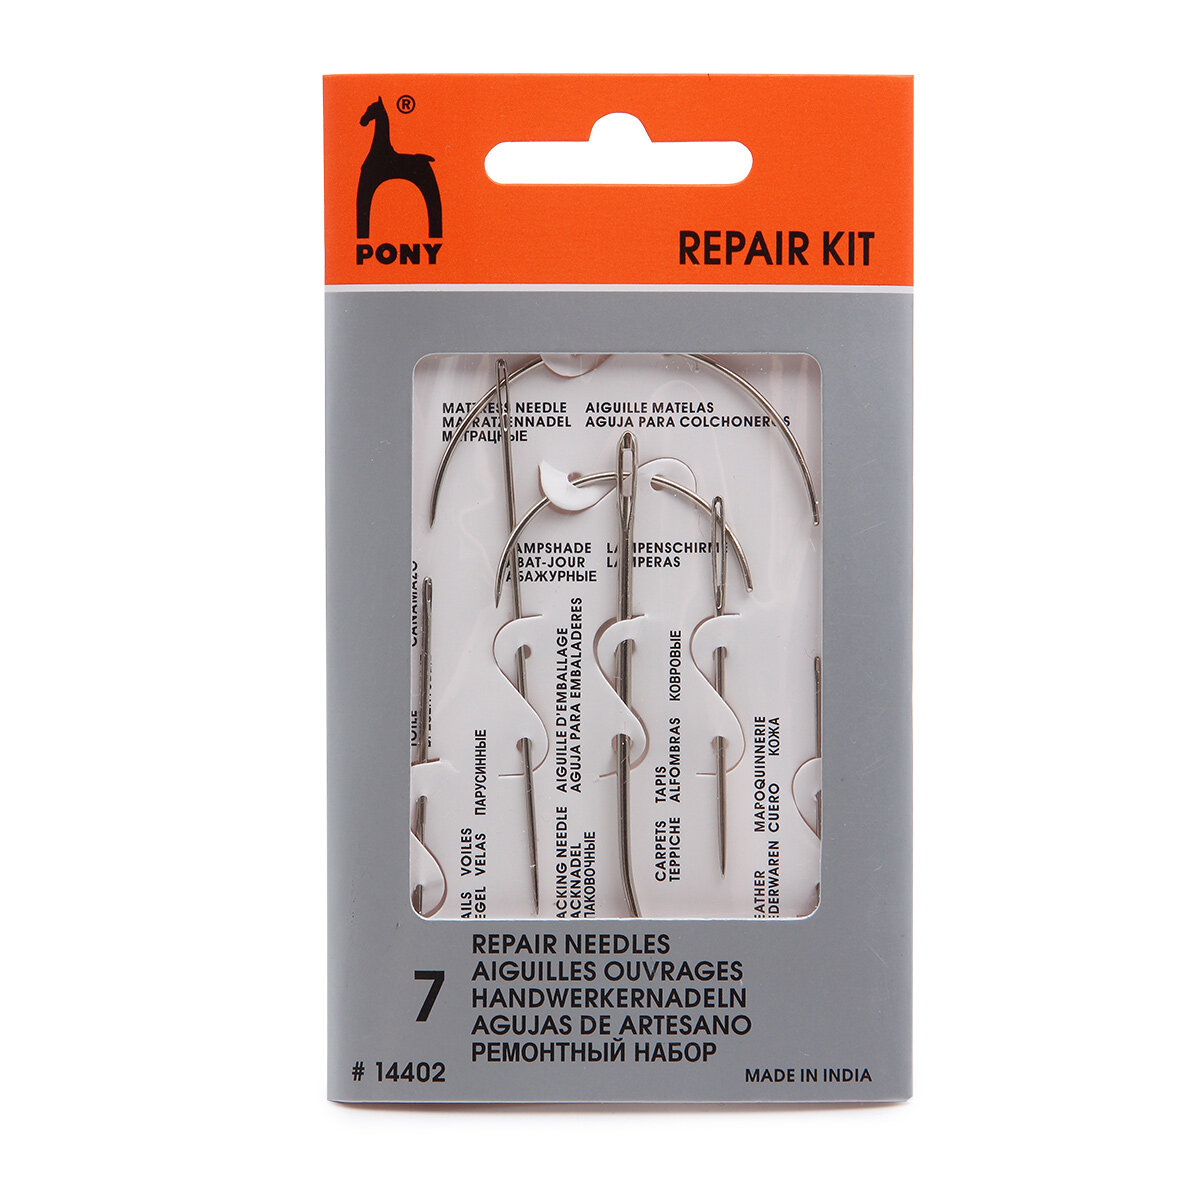 Иголки для шитья и ремонта, PONY Repair Kit, 14402, 7 шт